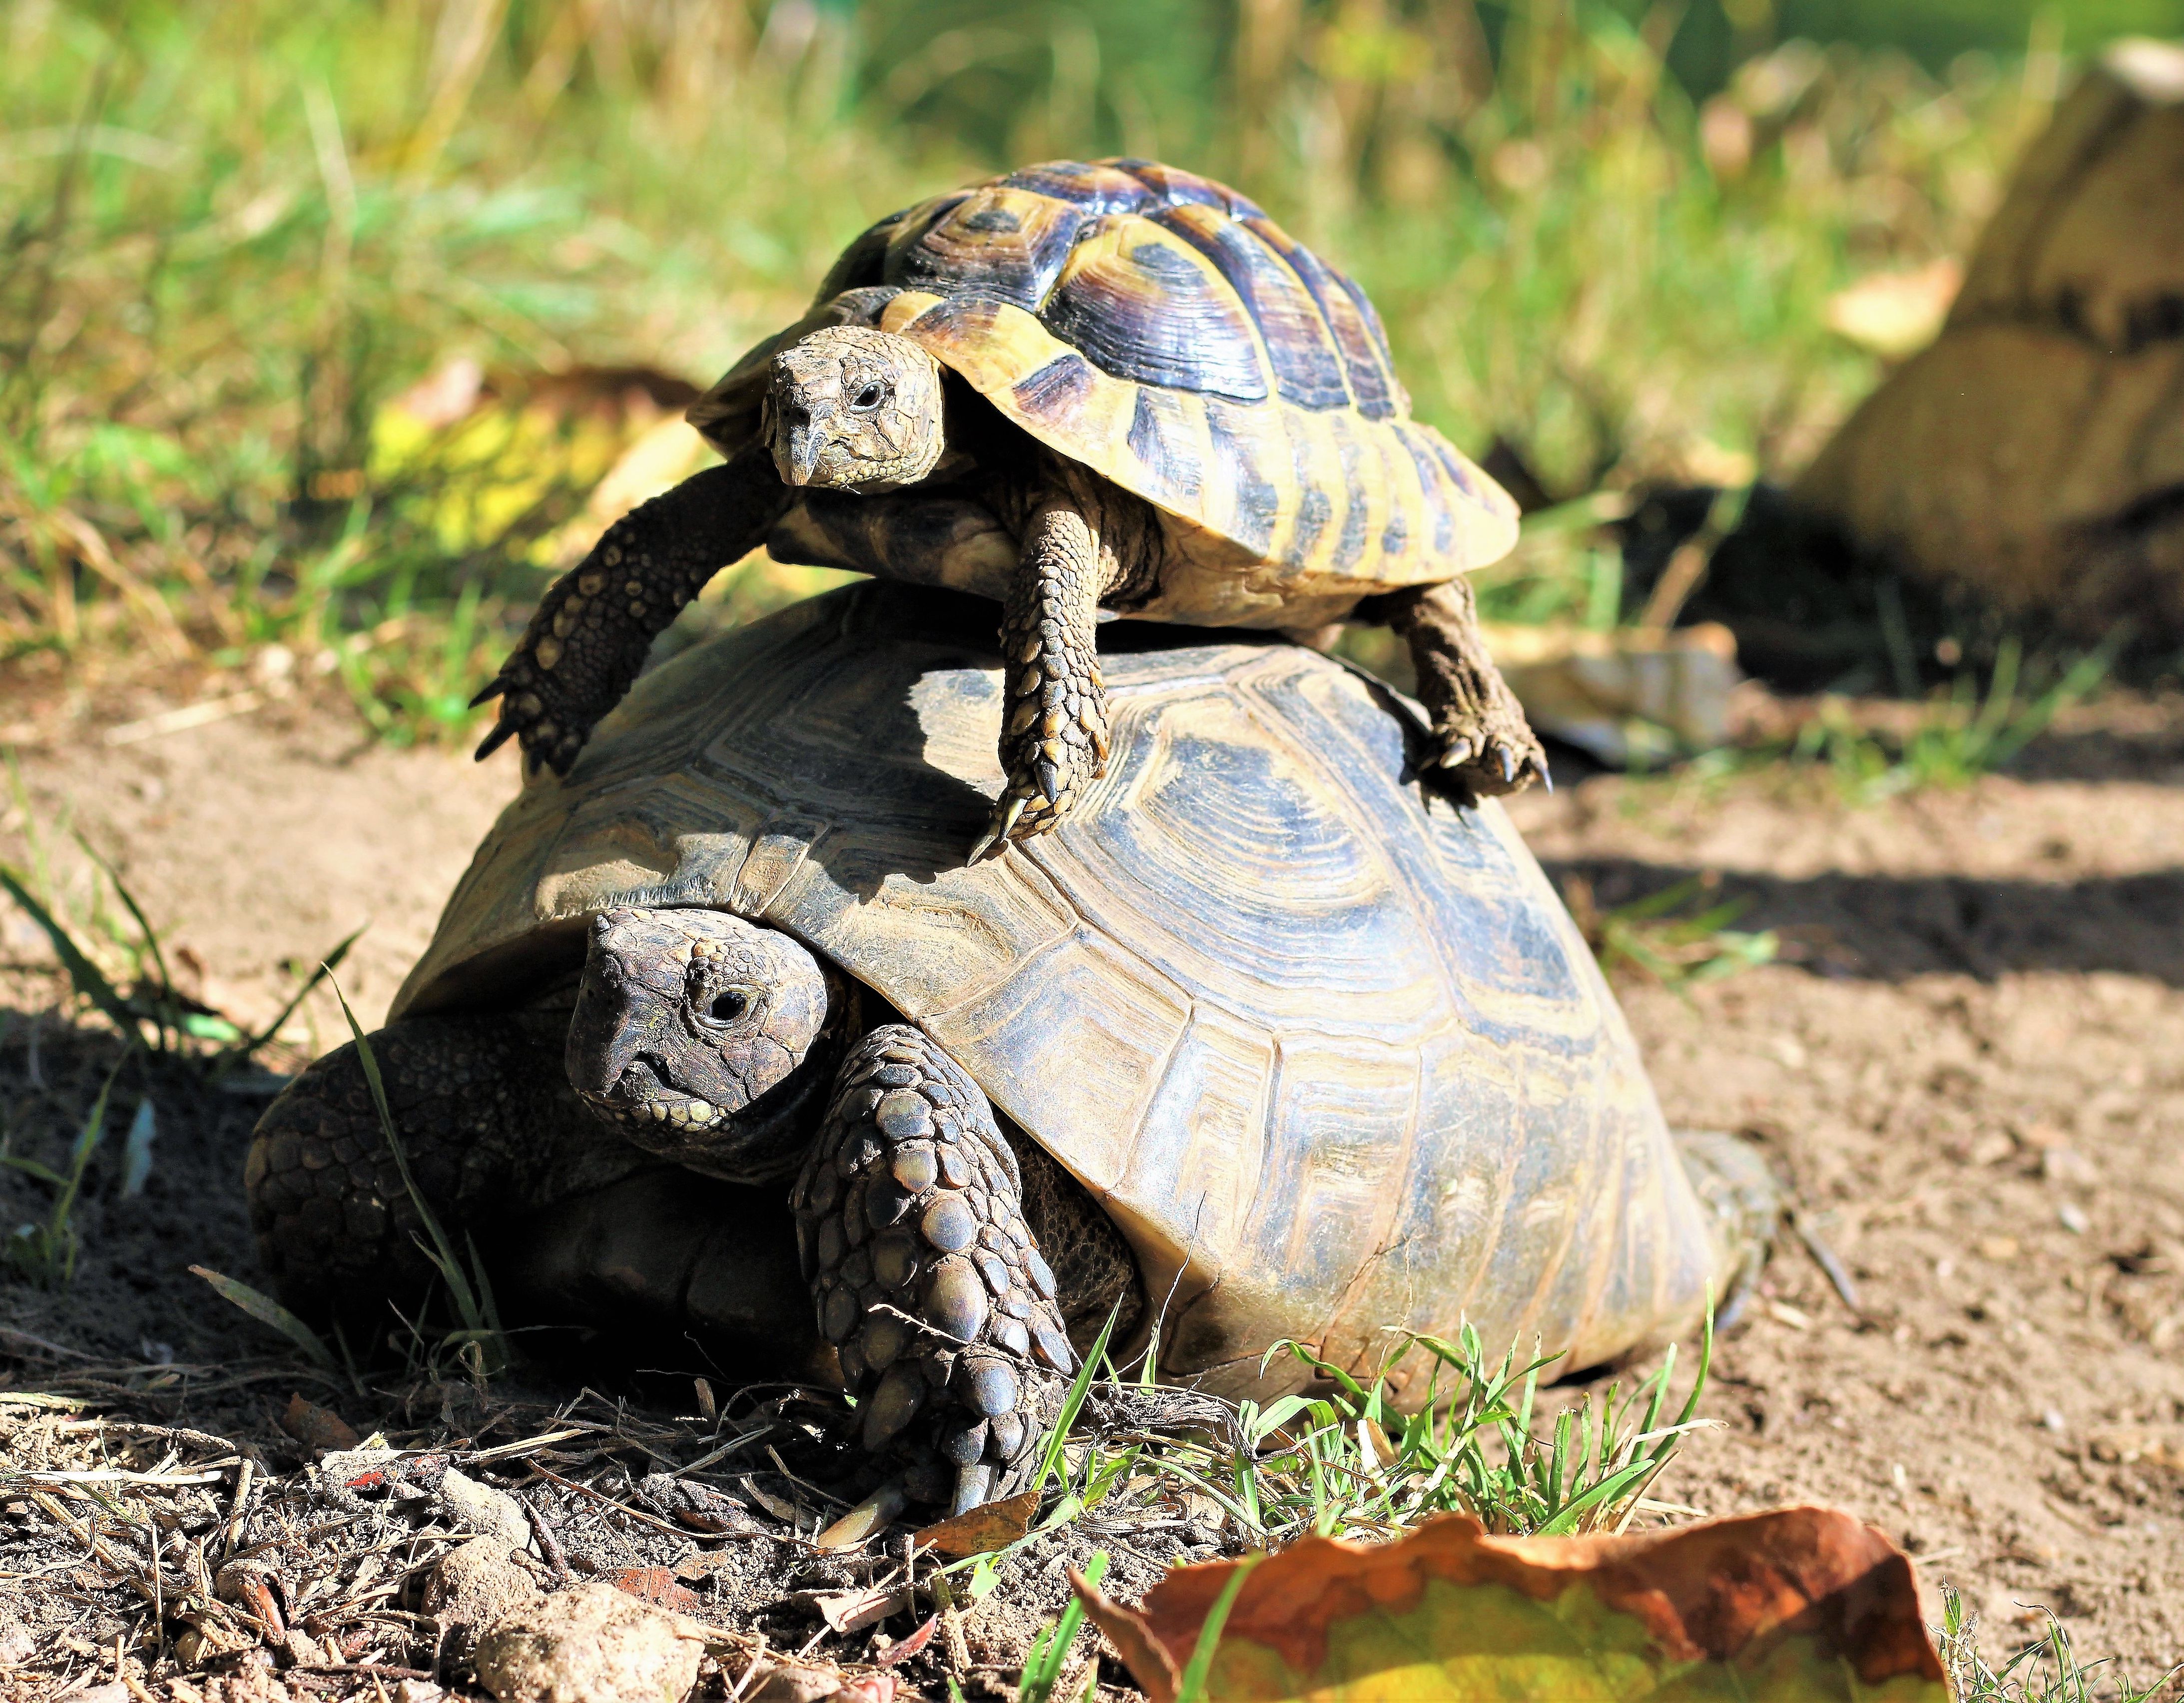 Eine kleine Landschildkröte liegt auf einer größeren Landschildkröte.